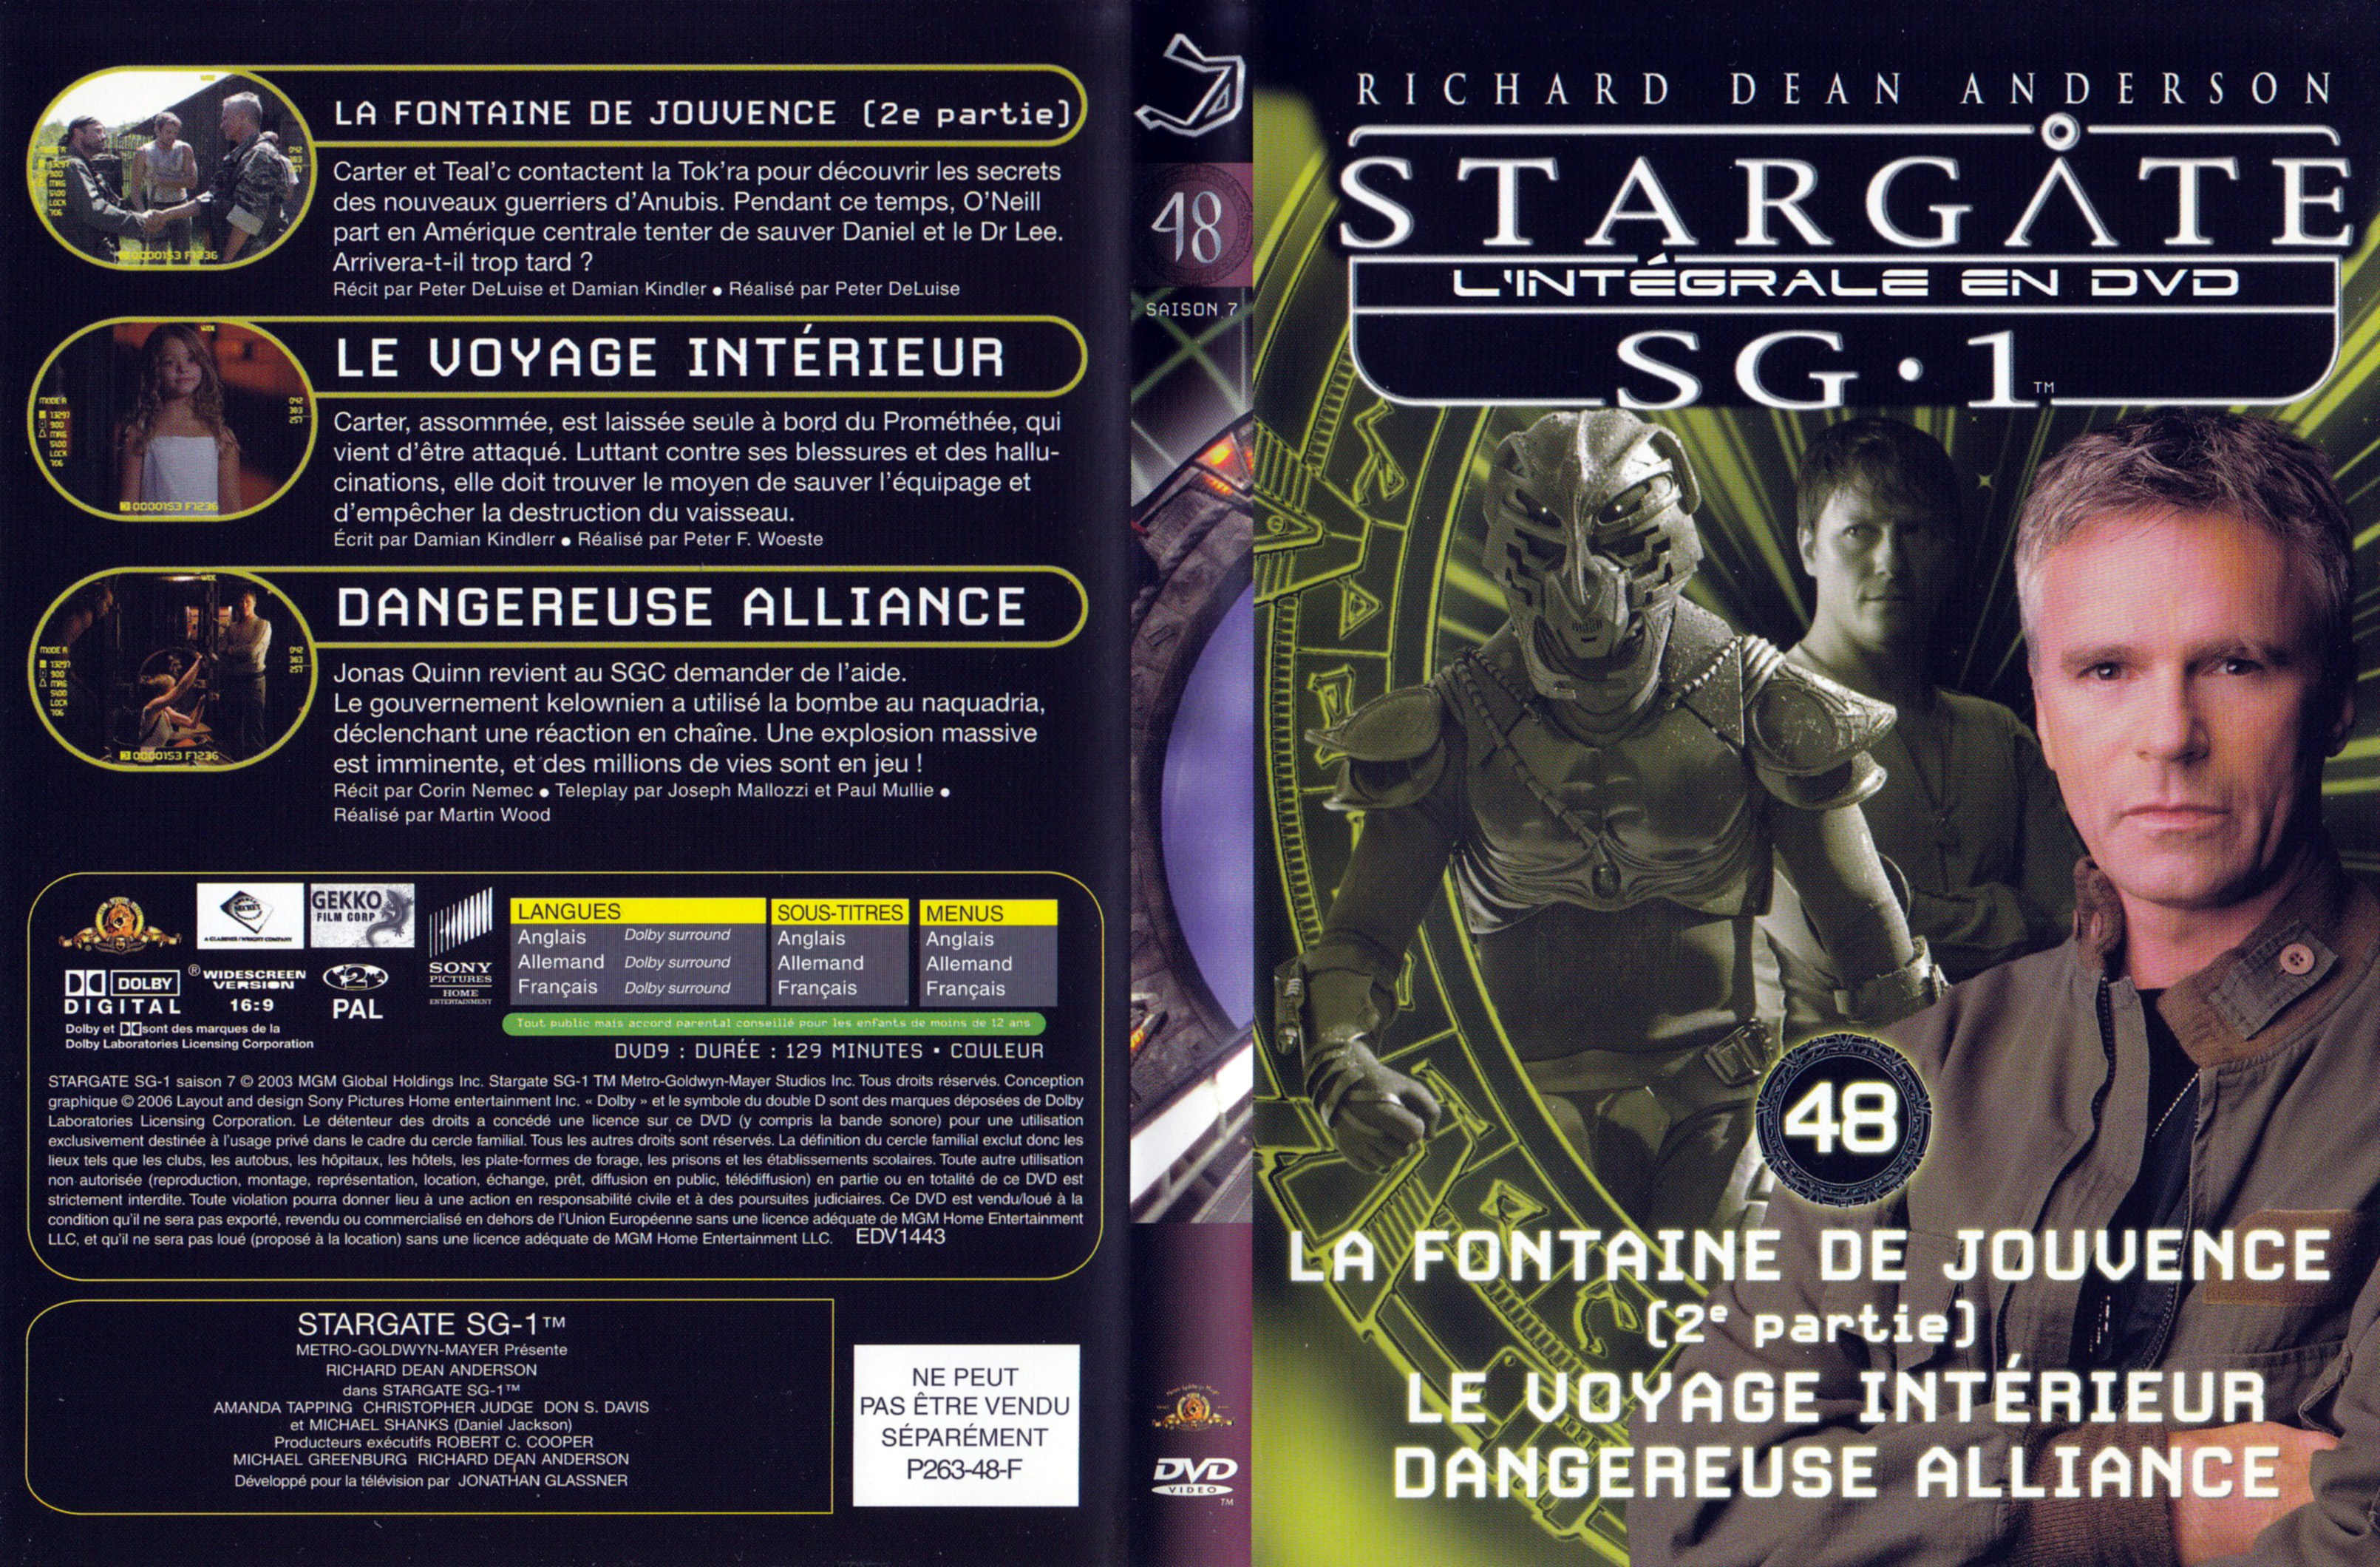 Jaquette DVD Stargate SG1 Intgrale Saison 7 vol 48